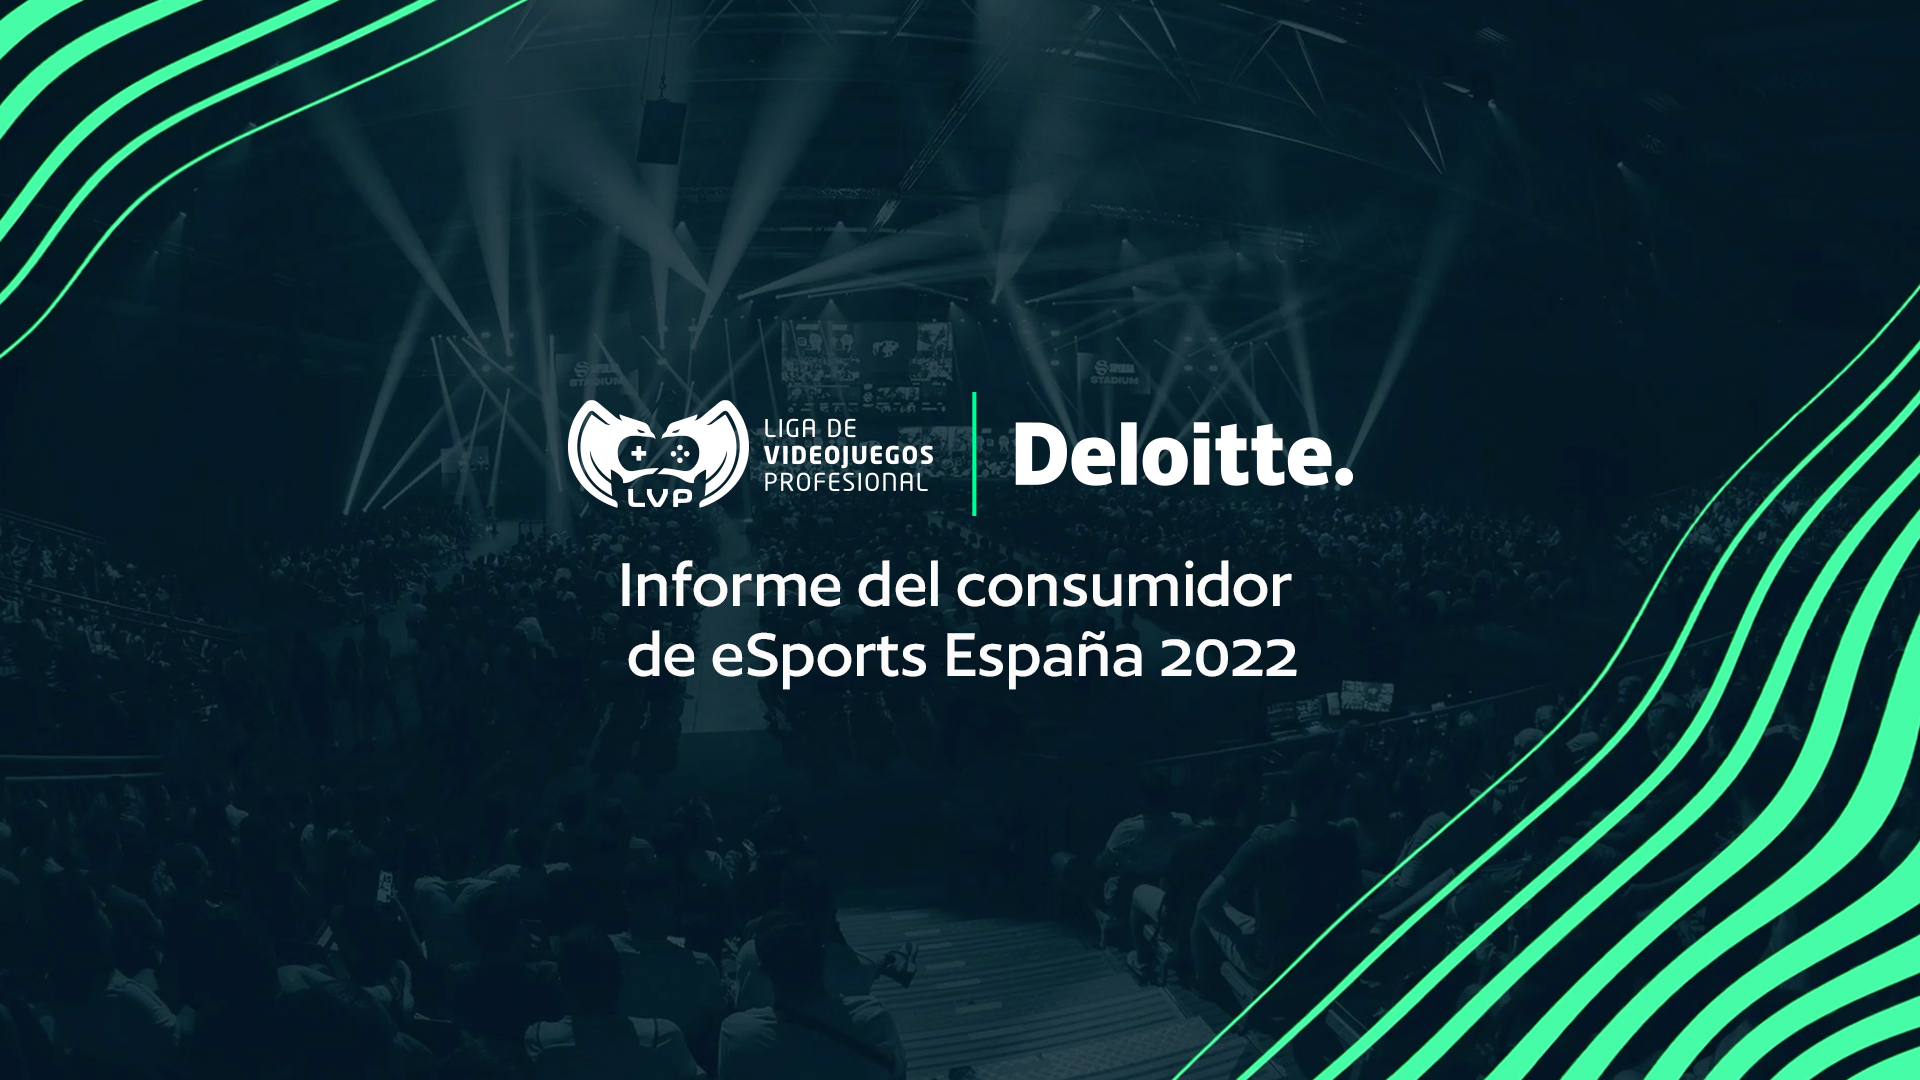 LVP y Deloitte lanzan el Informe del consumidor de esports en España